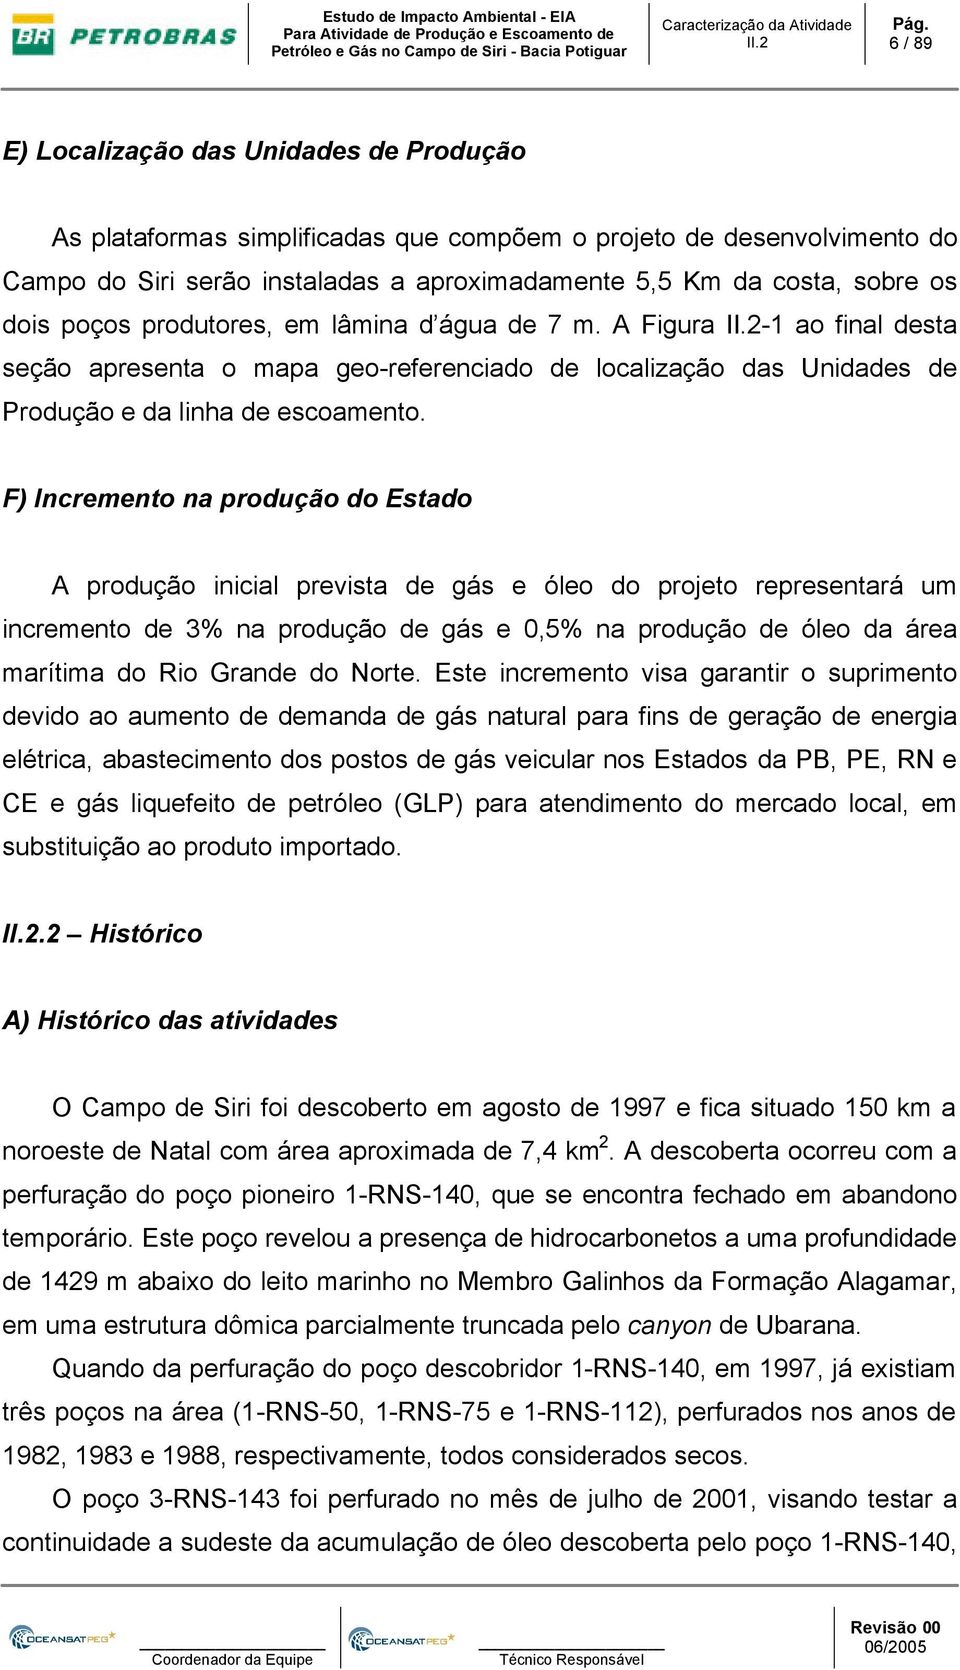 F) Incremento na produção do Estado A produção inicial prevista de gás e óleo do projeto representará um incremento de 3% na produção de gás e 0,5% na produção de óleo da área marítima do Rio Grande